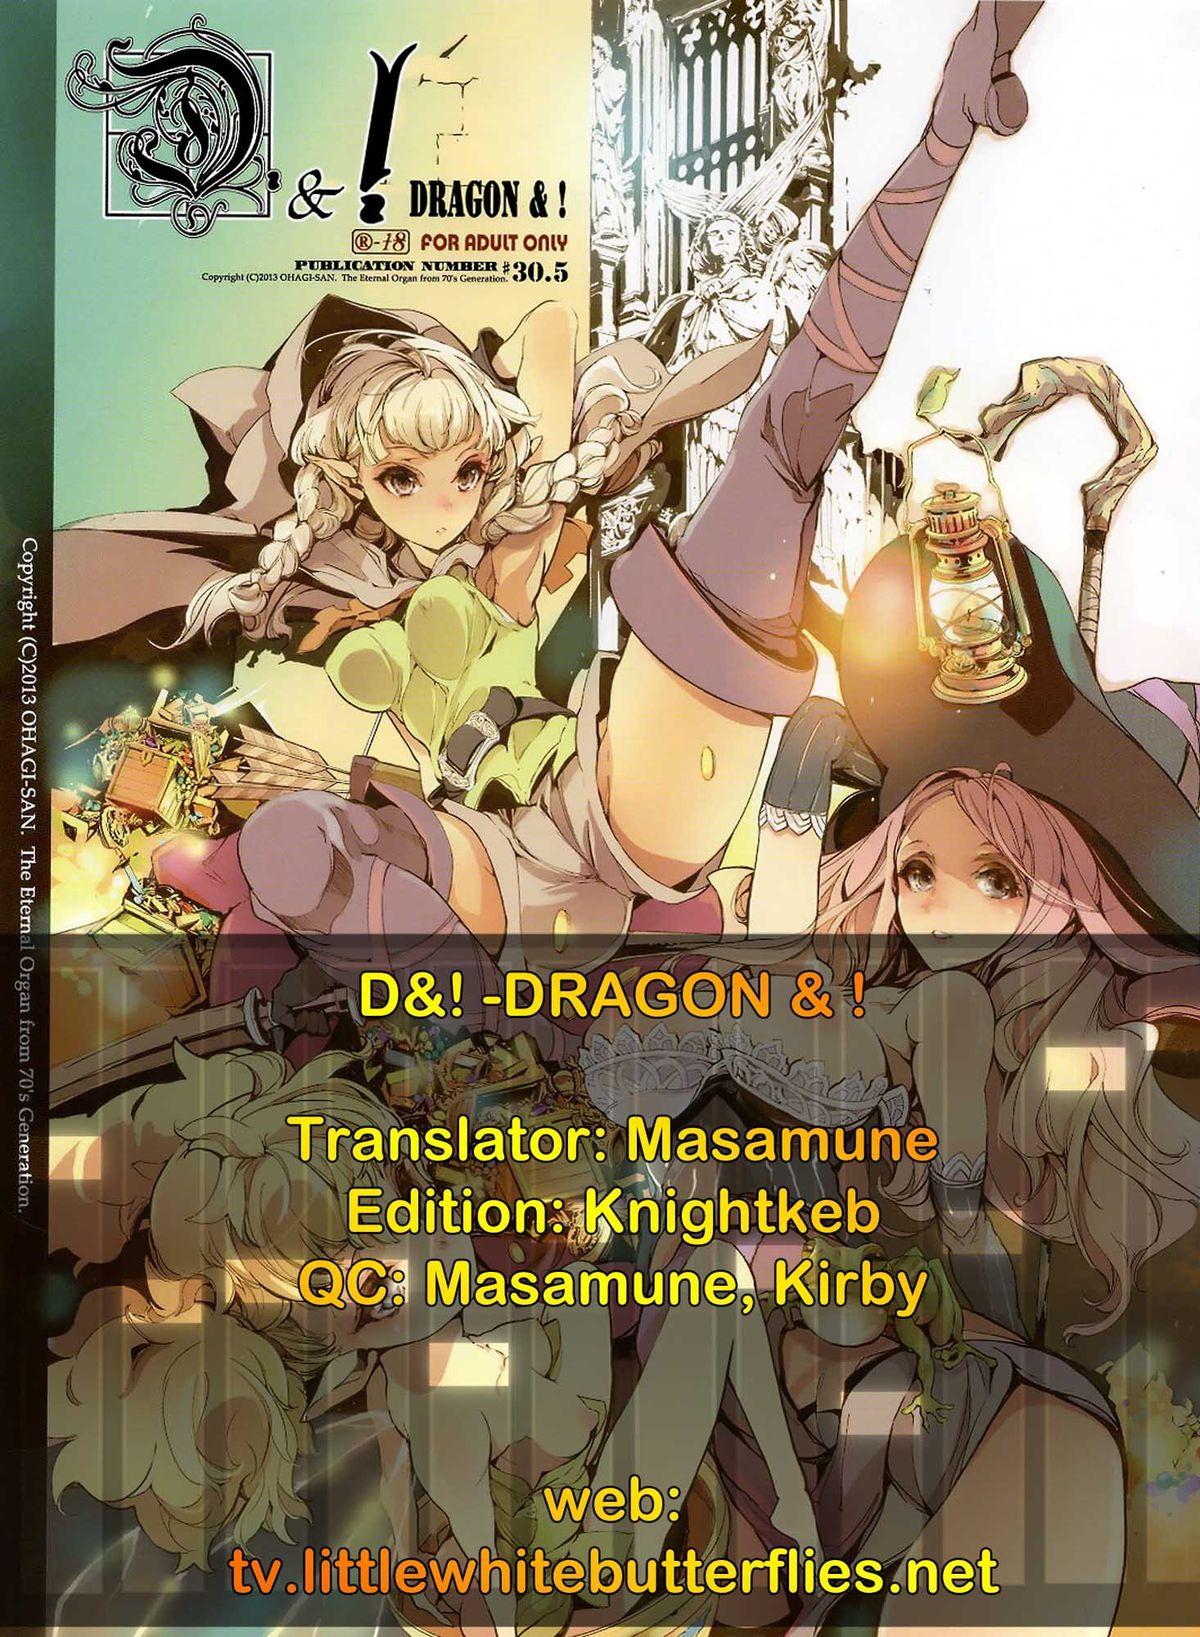 D&! -DRAGON & ! 9